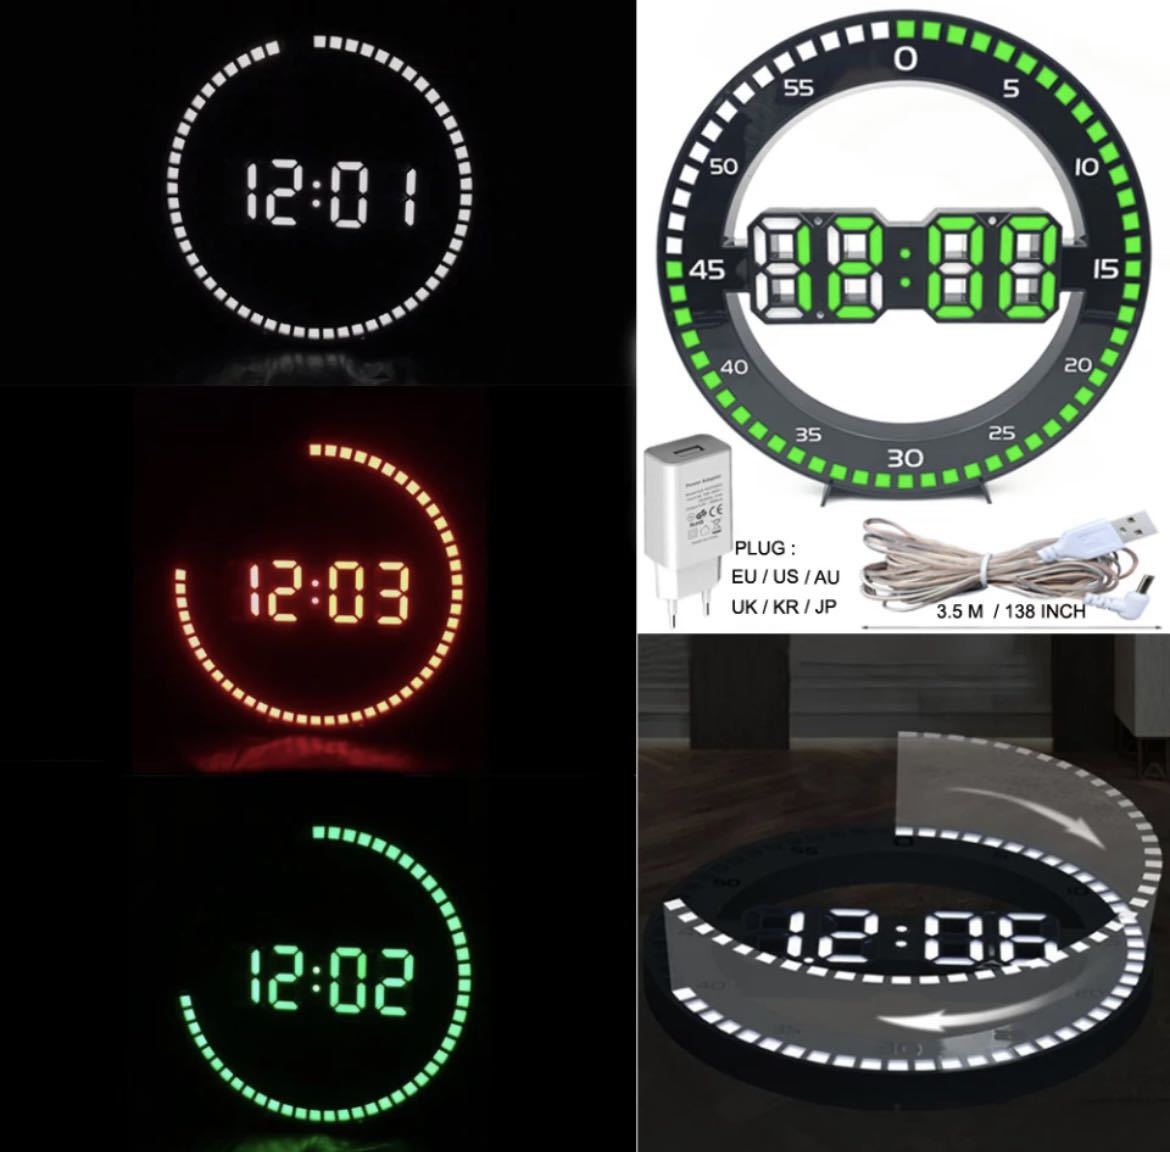 全5種類 要1種類選択 丸型3D LEDデジタル壁掛け時計 壁掛け時計 時計 インテリア モダン オーナメント デジタル USB 目覚まし時計 1603_画像1